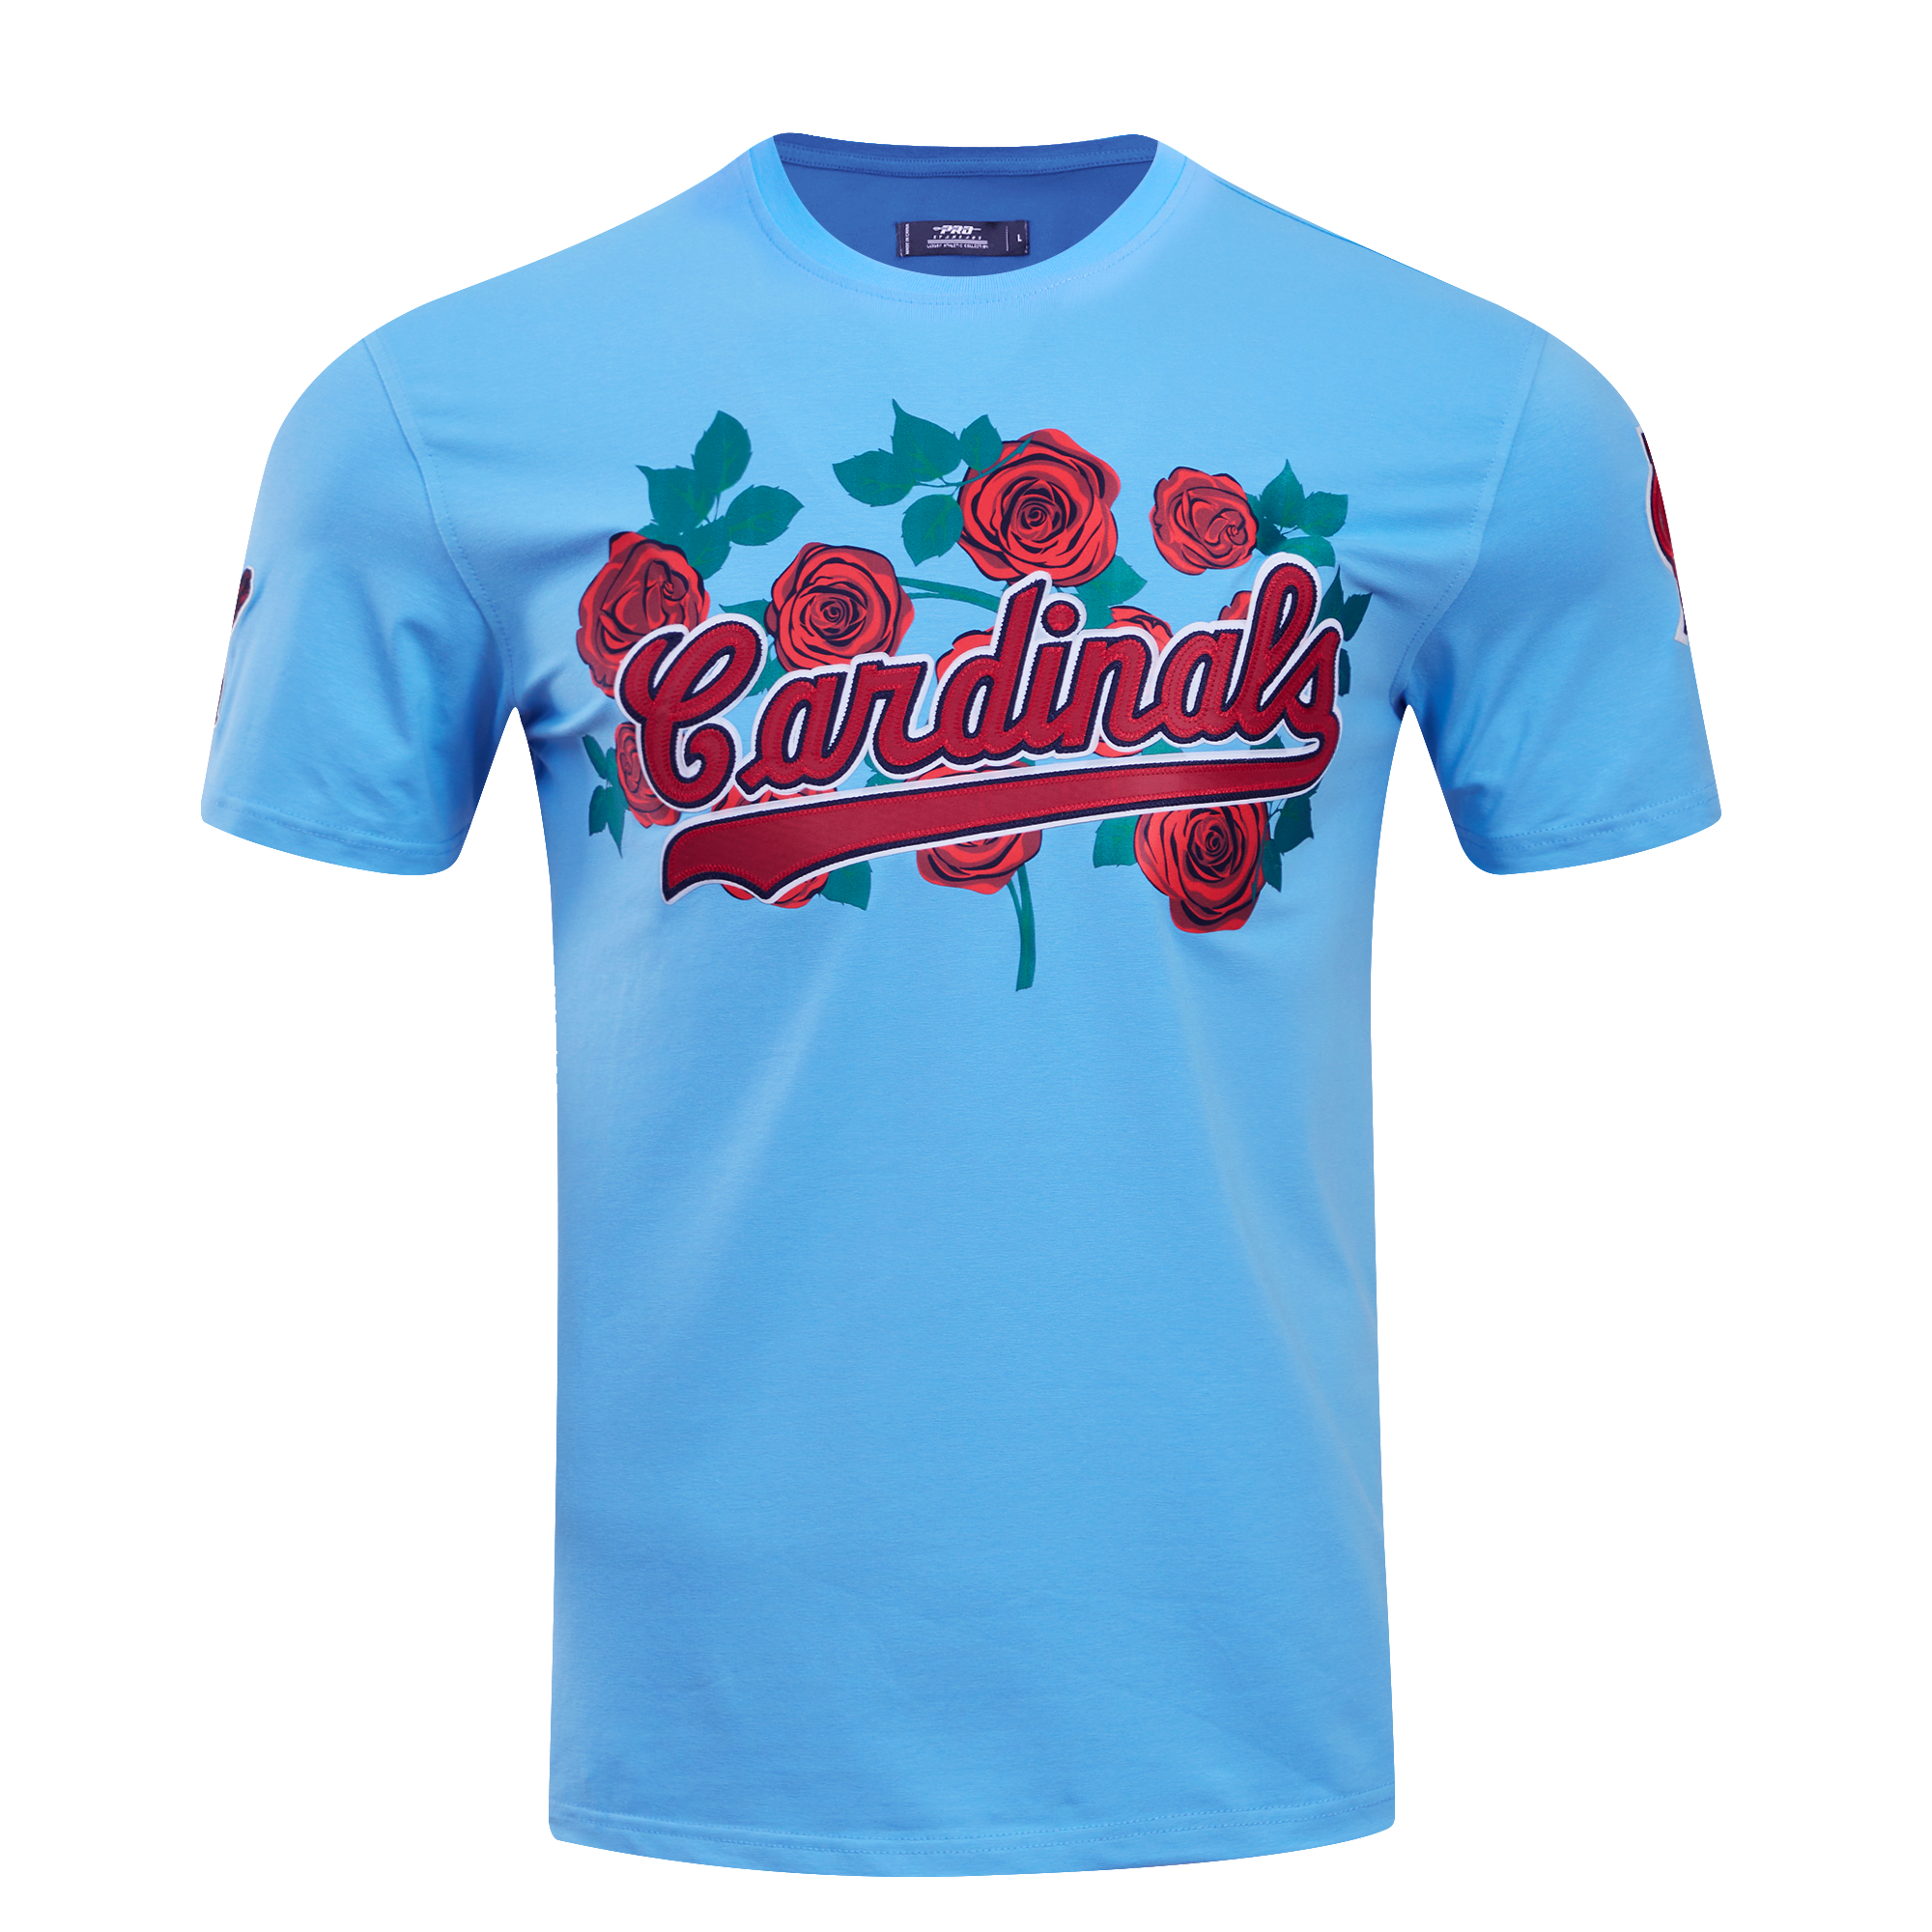 St Louis Cardinals T-Shirts for Sale - Pixels